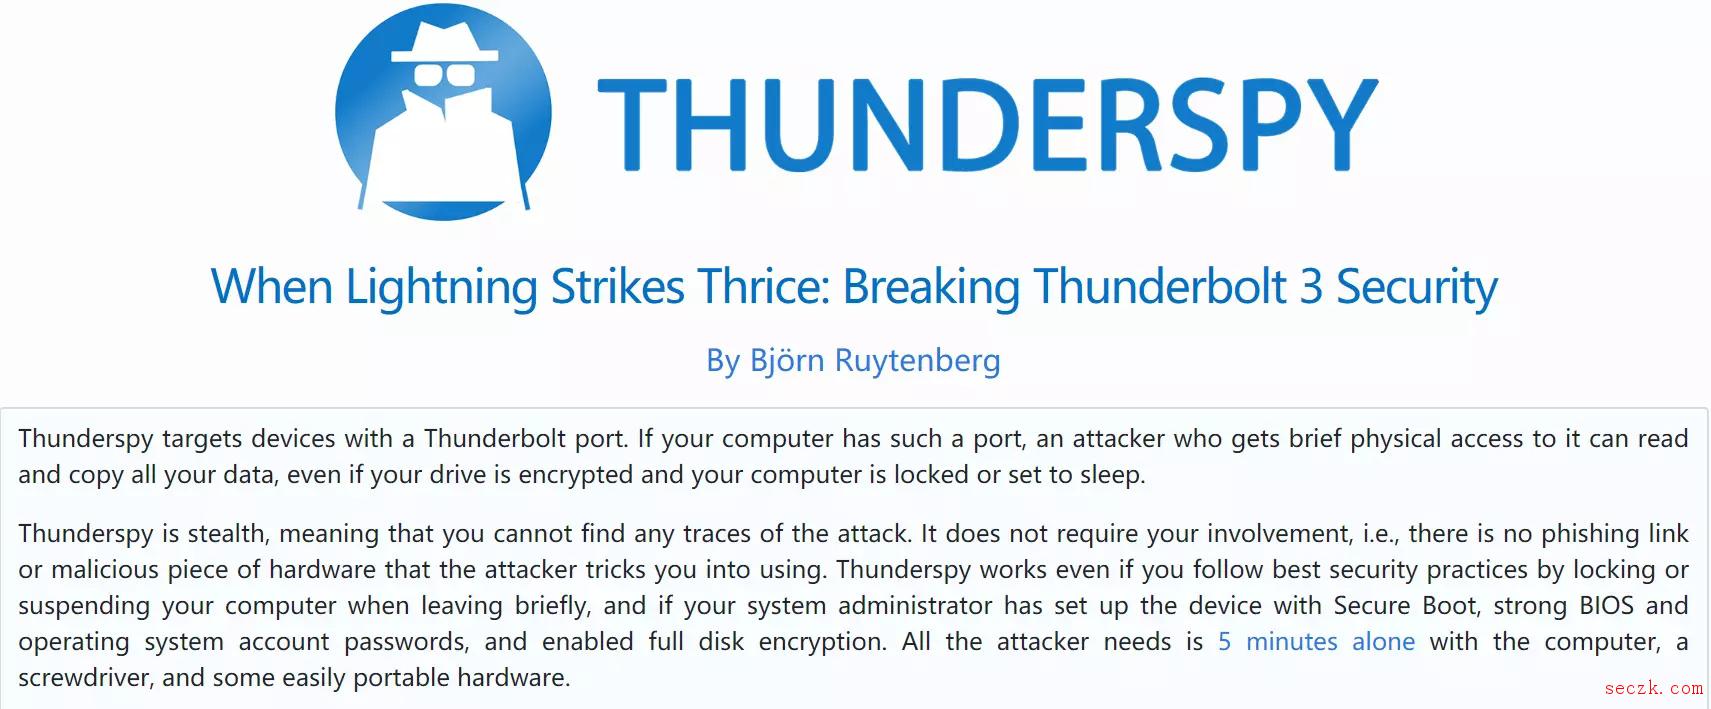 2019 年之前生产的任何 PC 都易受到“Thunderspy”攻击